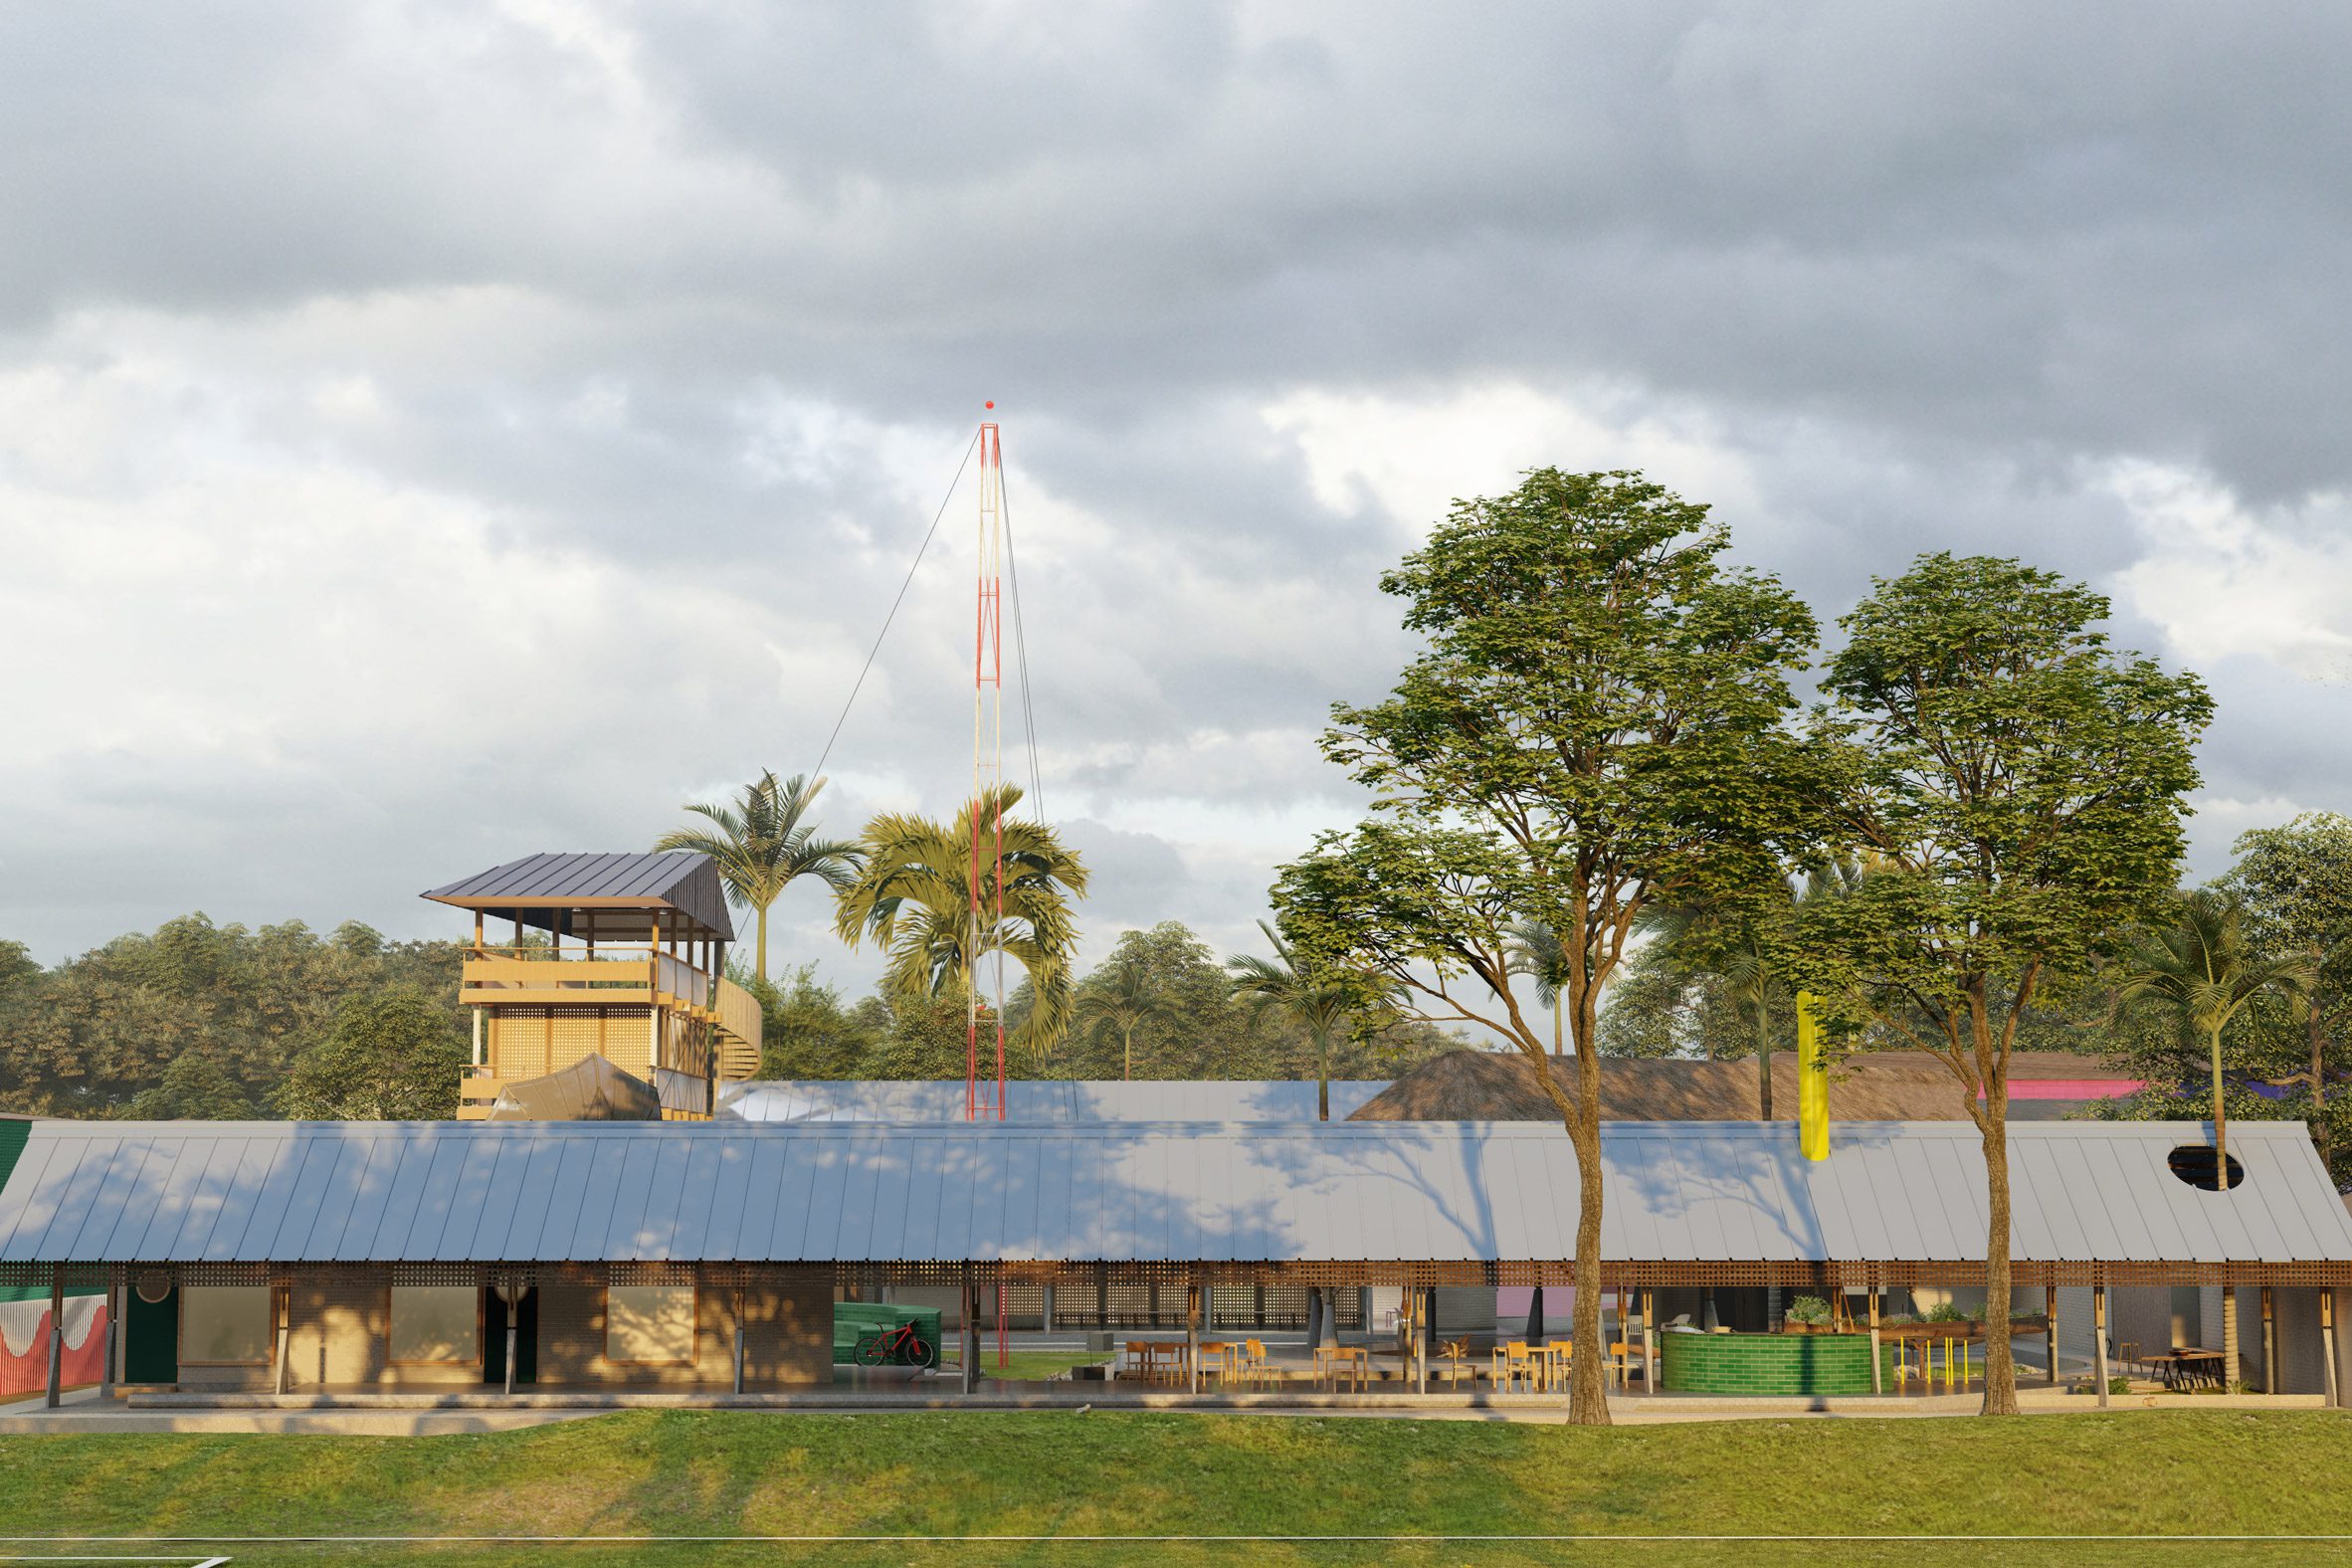 A long pavilion